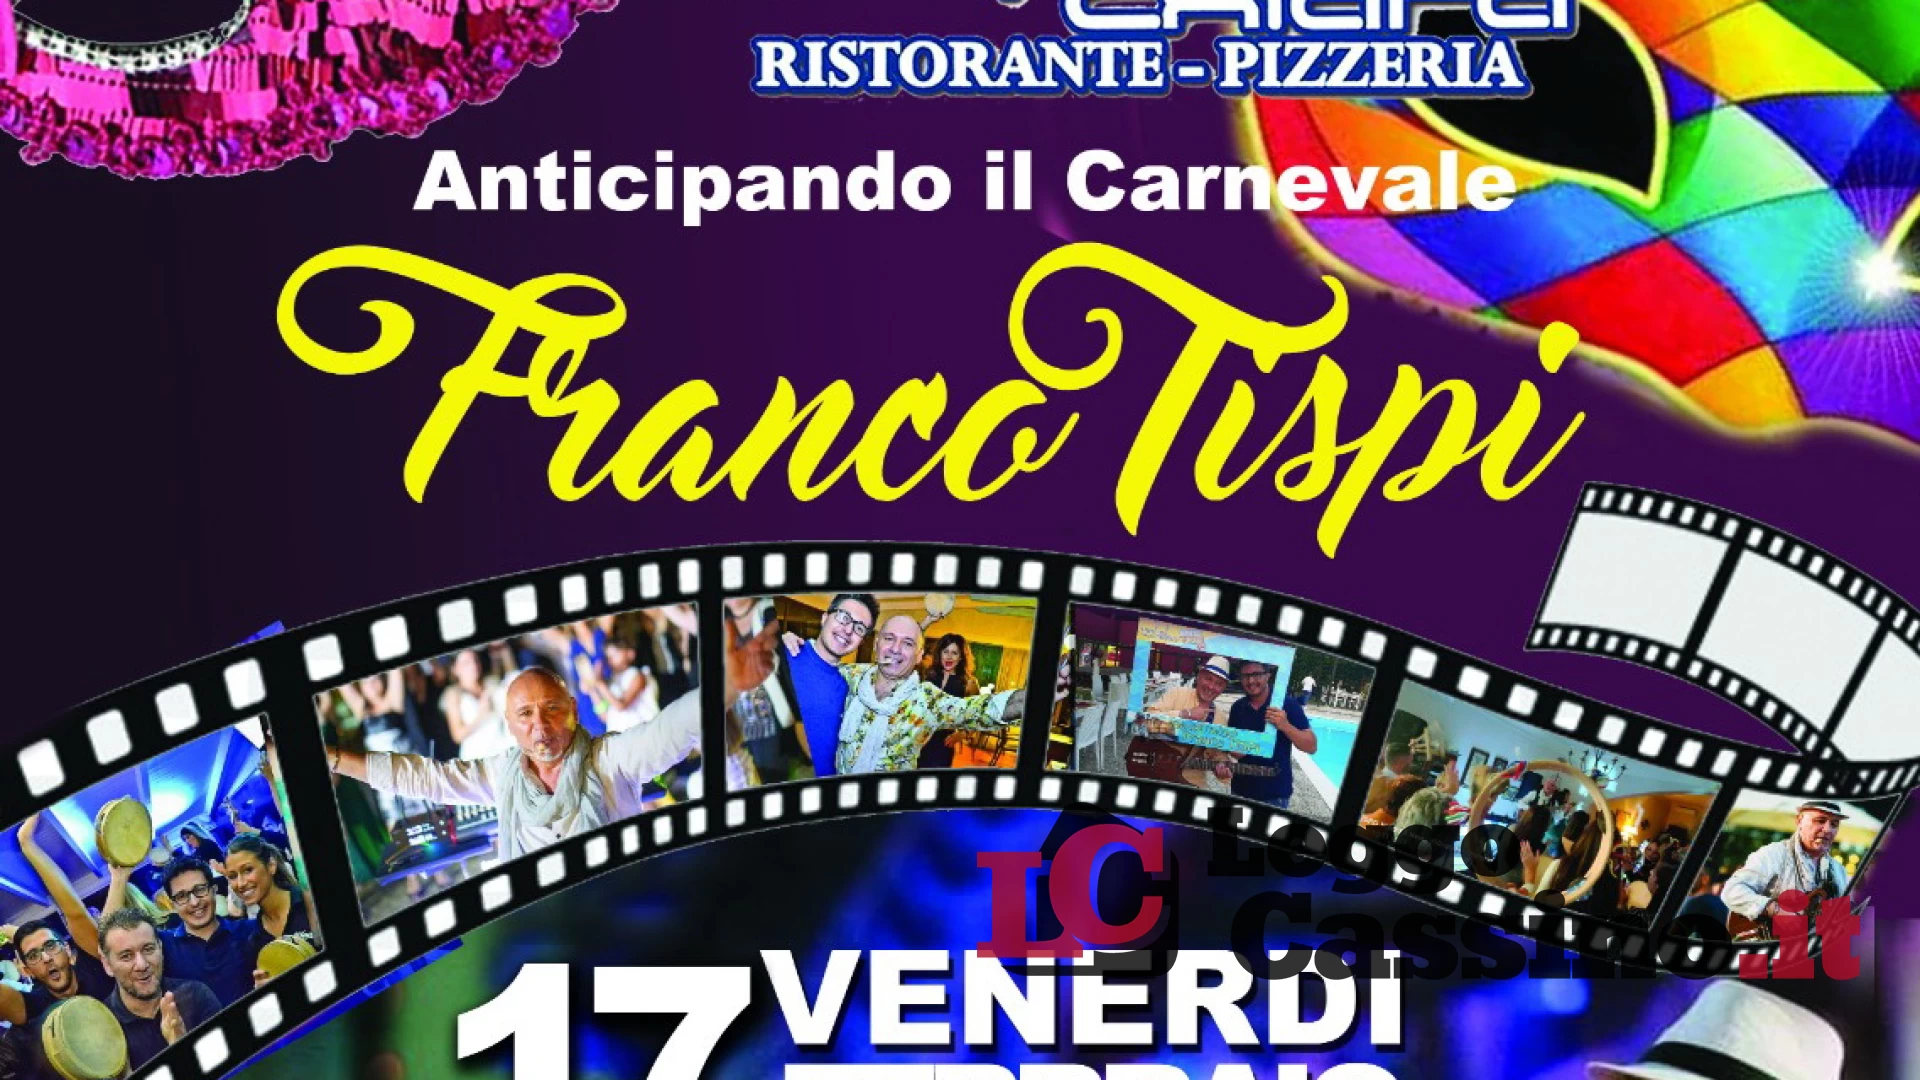 "Anticipando il Carnevale" a Cassino con Franco Tispi